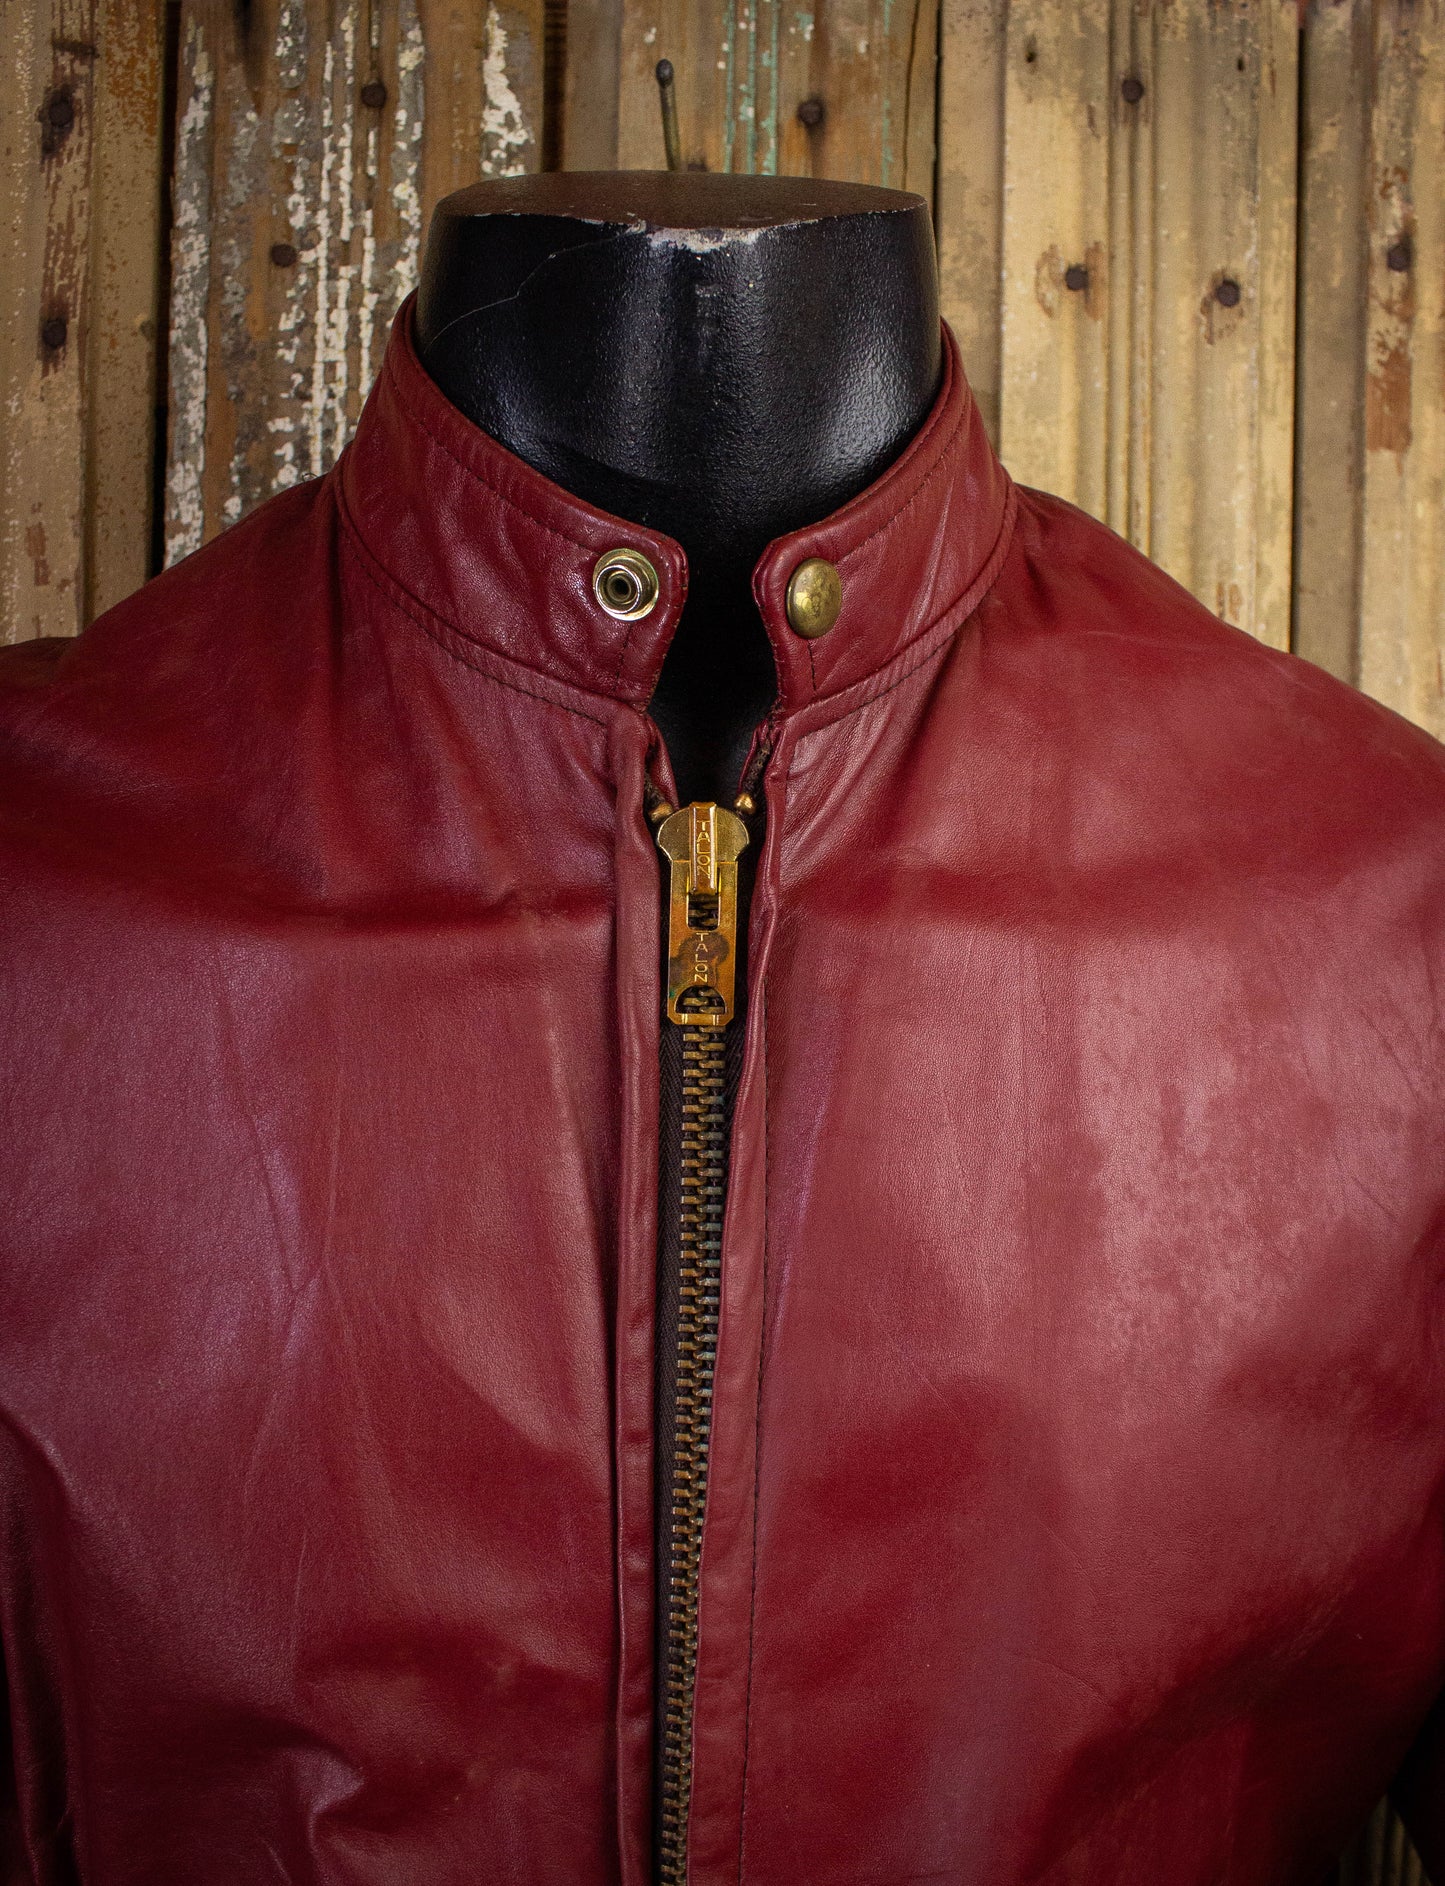 Vintage Red Cafe Racer Leather Jacket 70s Large